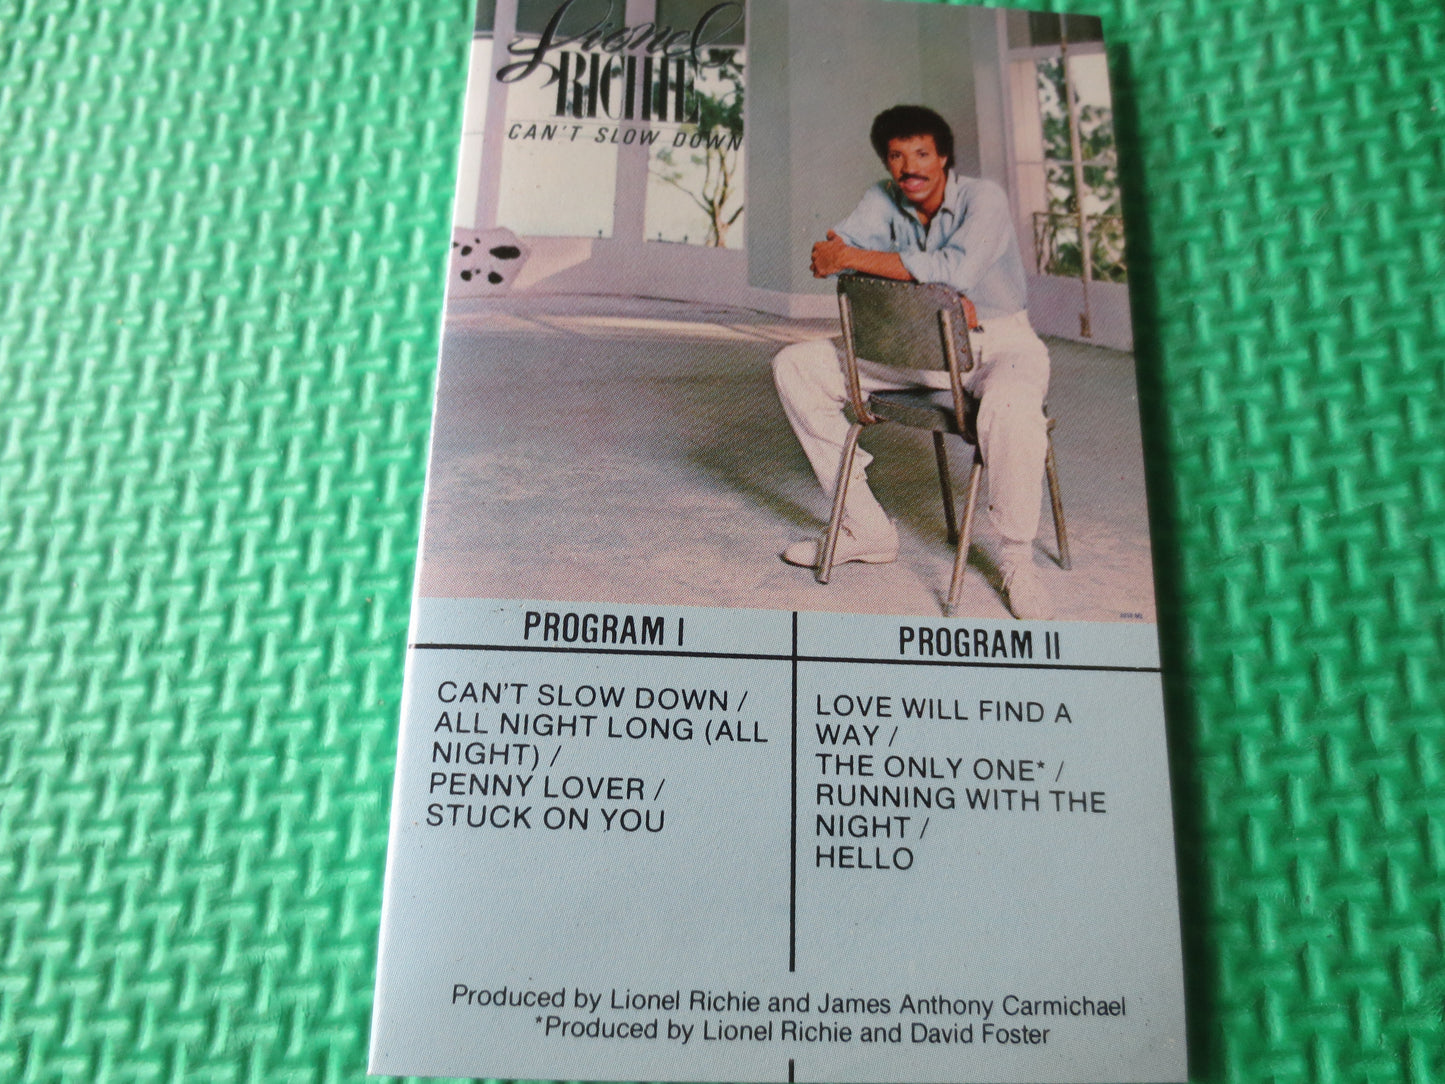 LIONEL RICHIE Tape, Can't Slow Down, Lionel Richie Album, Lionel Richie Music, Tape Cassette, Rock Cassette, 1983 Cassette